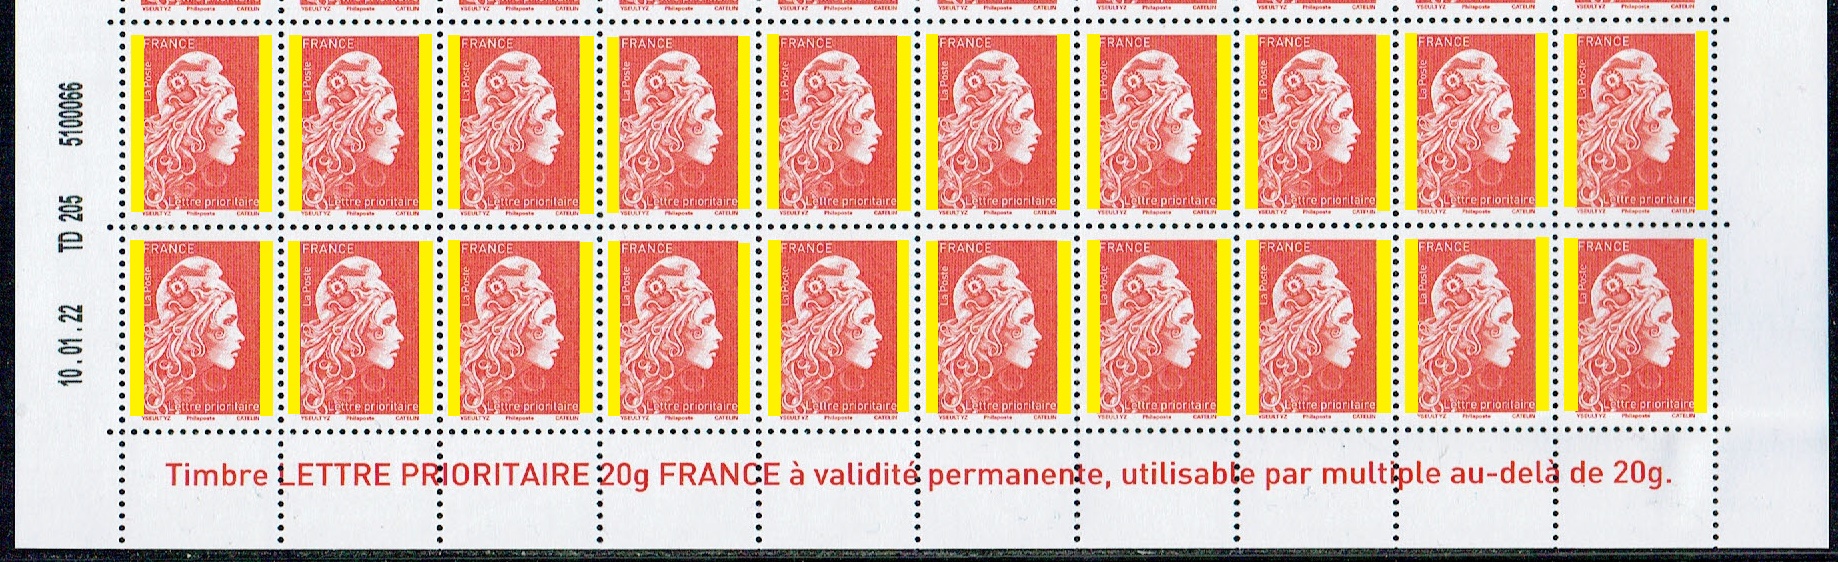 Carnet 10 timbres Marianne l'engagée - Lettre verte